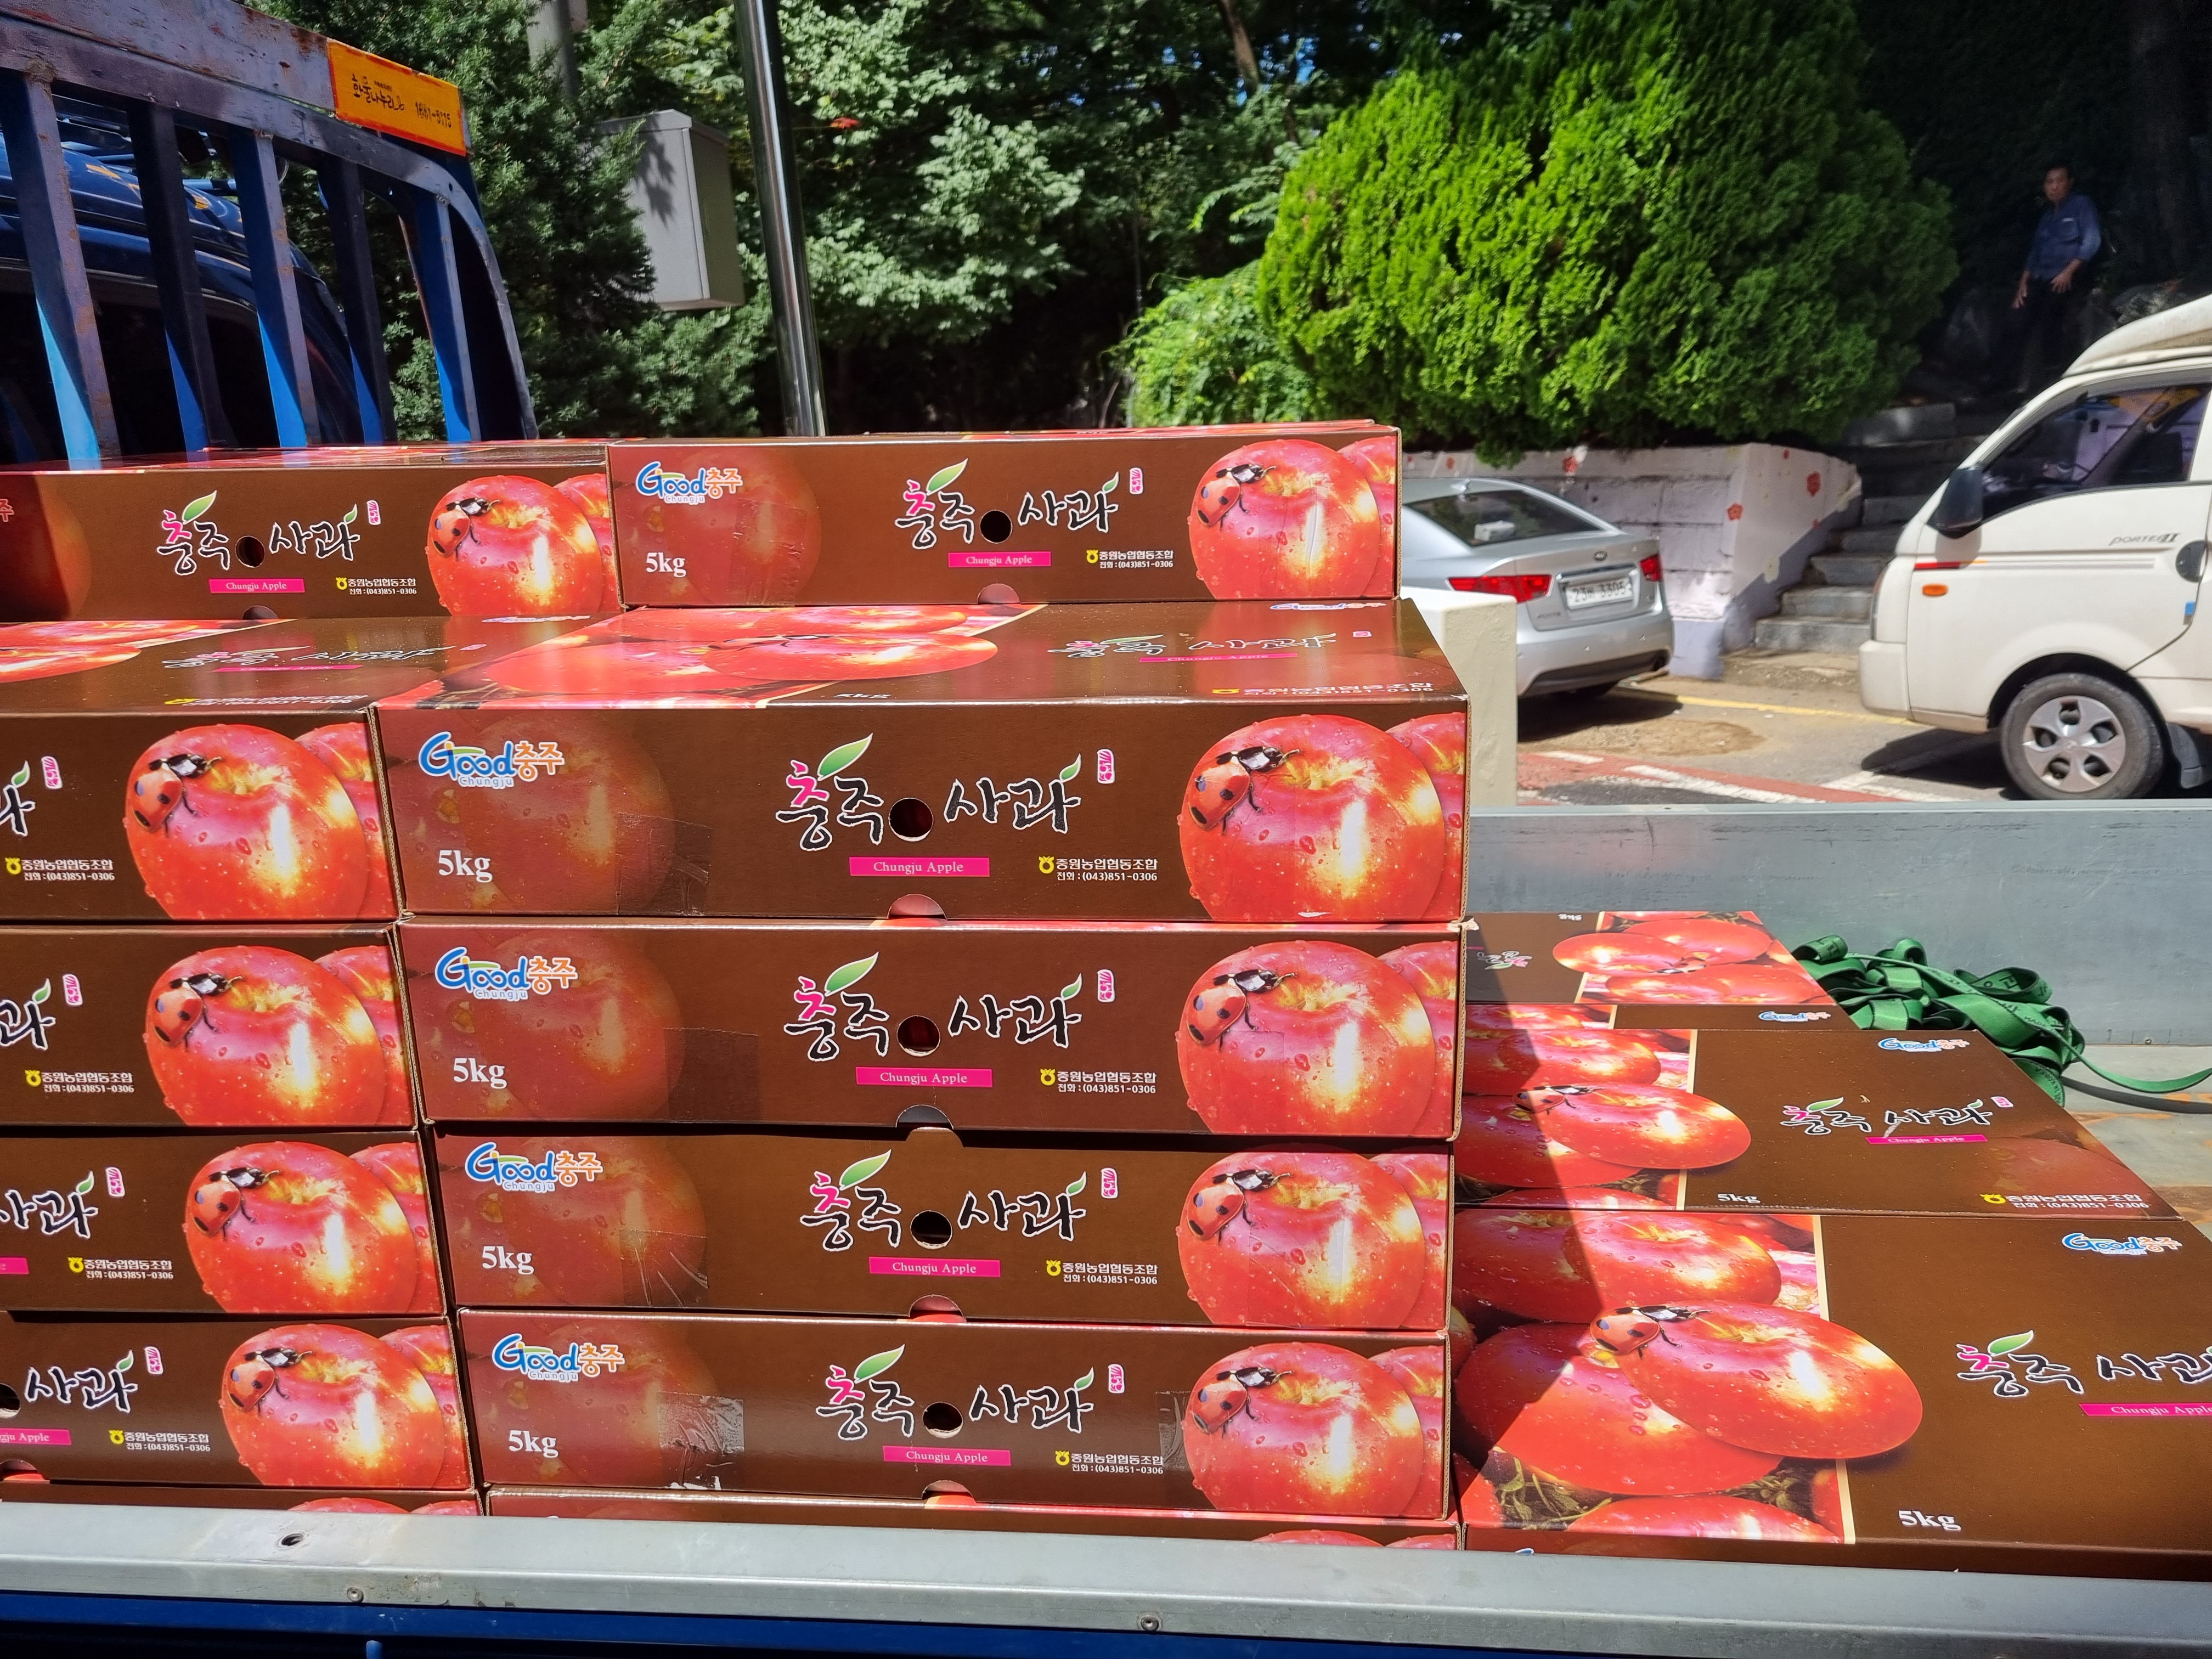 한국지역난방공사에서 사과, 건표고버섯, 방울토마토, 상품권을 후원해주셨습니다!